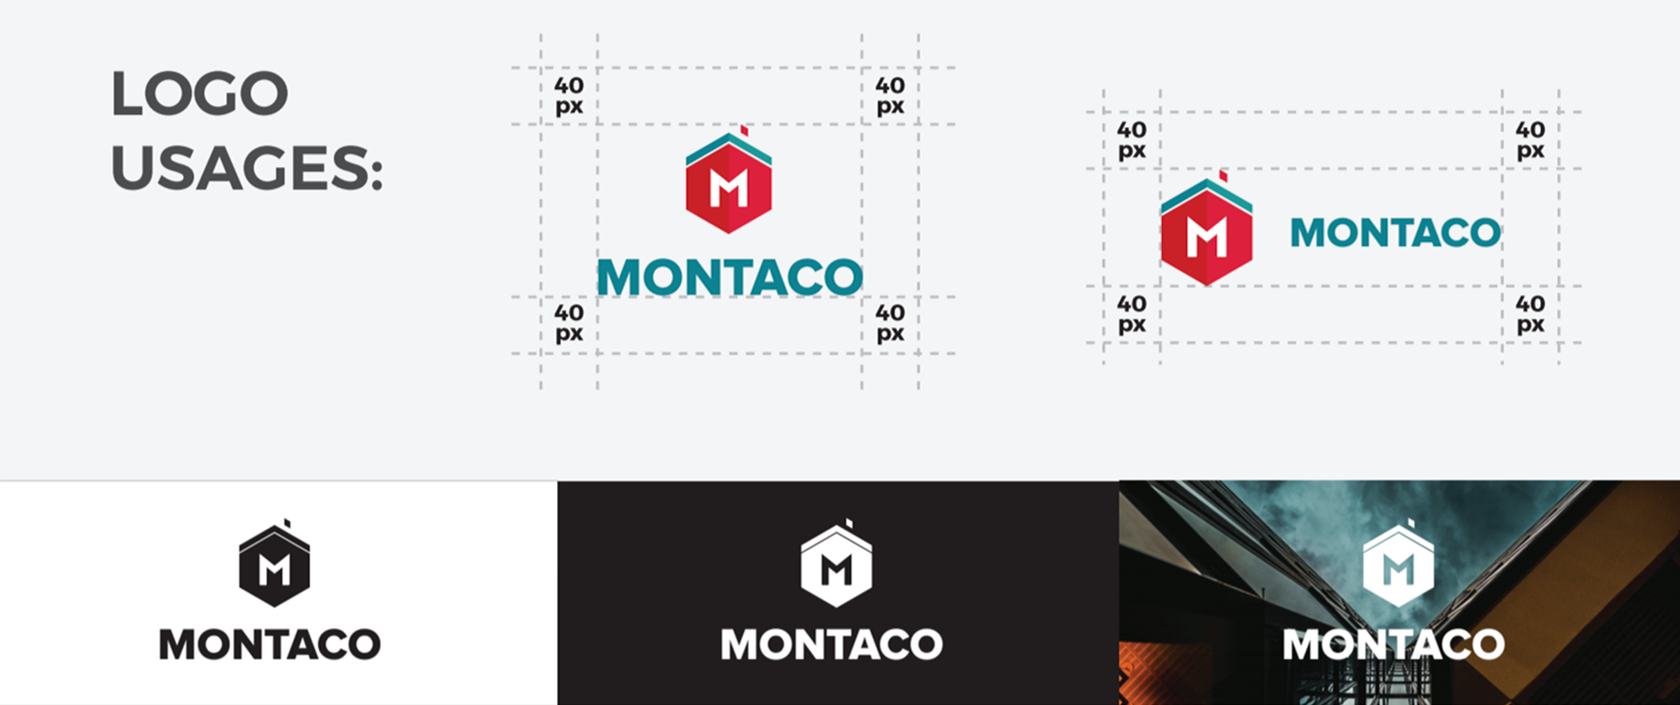 Montaco Roofing Company Branding Logo